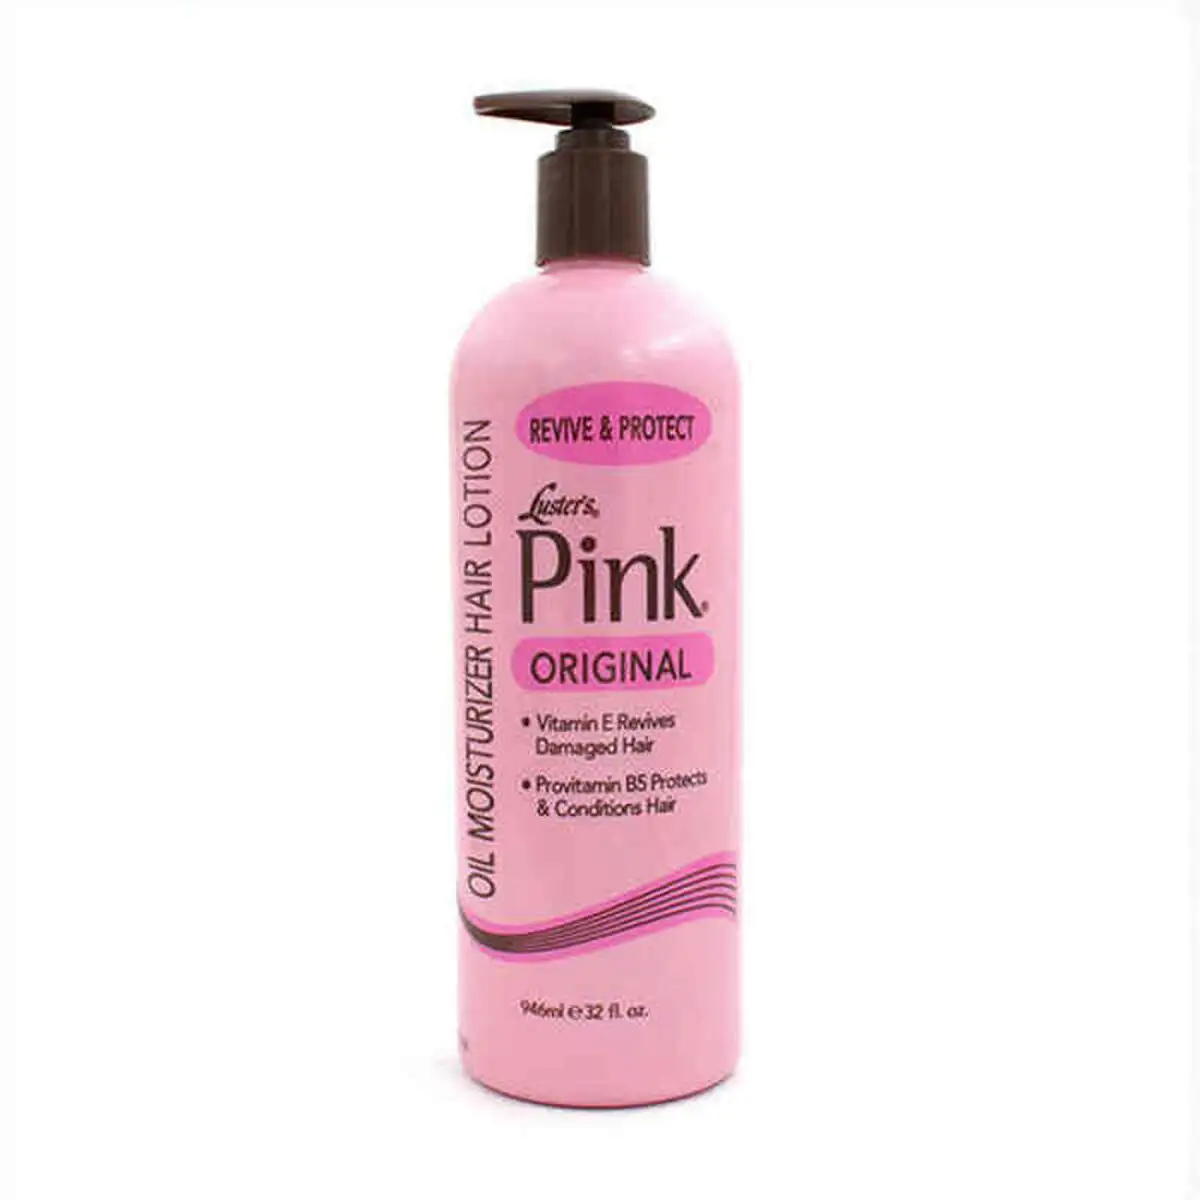 Creme protectrice luster pink oil original hydratant cheveux 946 ml _3112. DIAYTAR SENEGAL - Où Chaque Produit est une Promesse de Qualité. Explorez notre boutique en ligne et choisissez des produits qui répondent à vos exigences élevées.